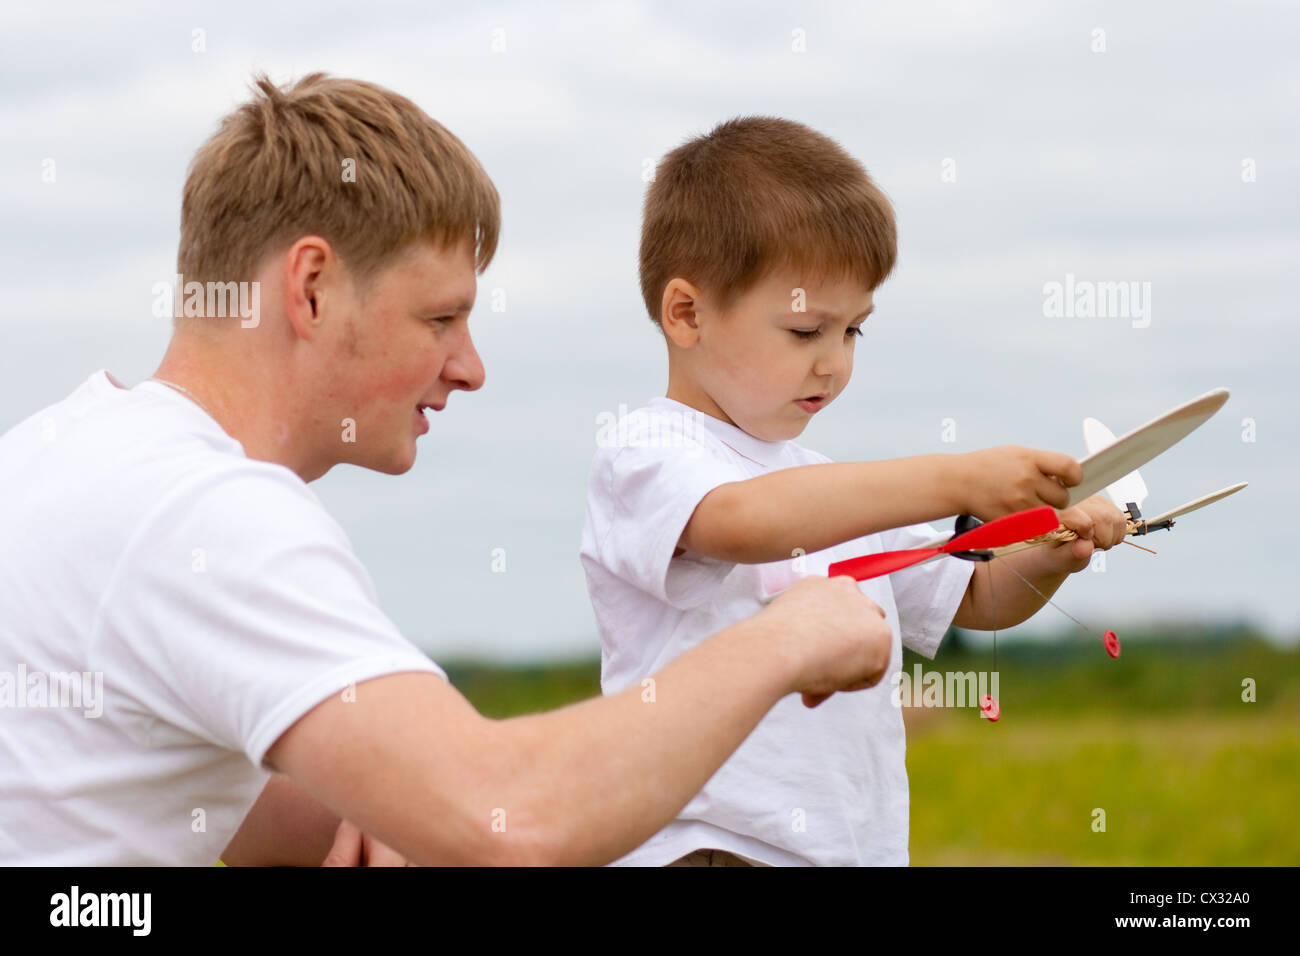 Vater und Sohn haben Spaß mit Spielzeug Flugzeugmodell im park Stockfoto